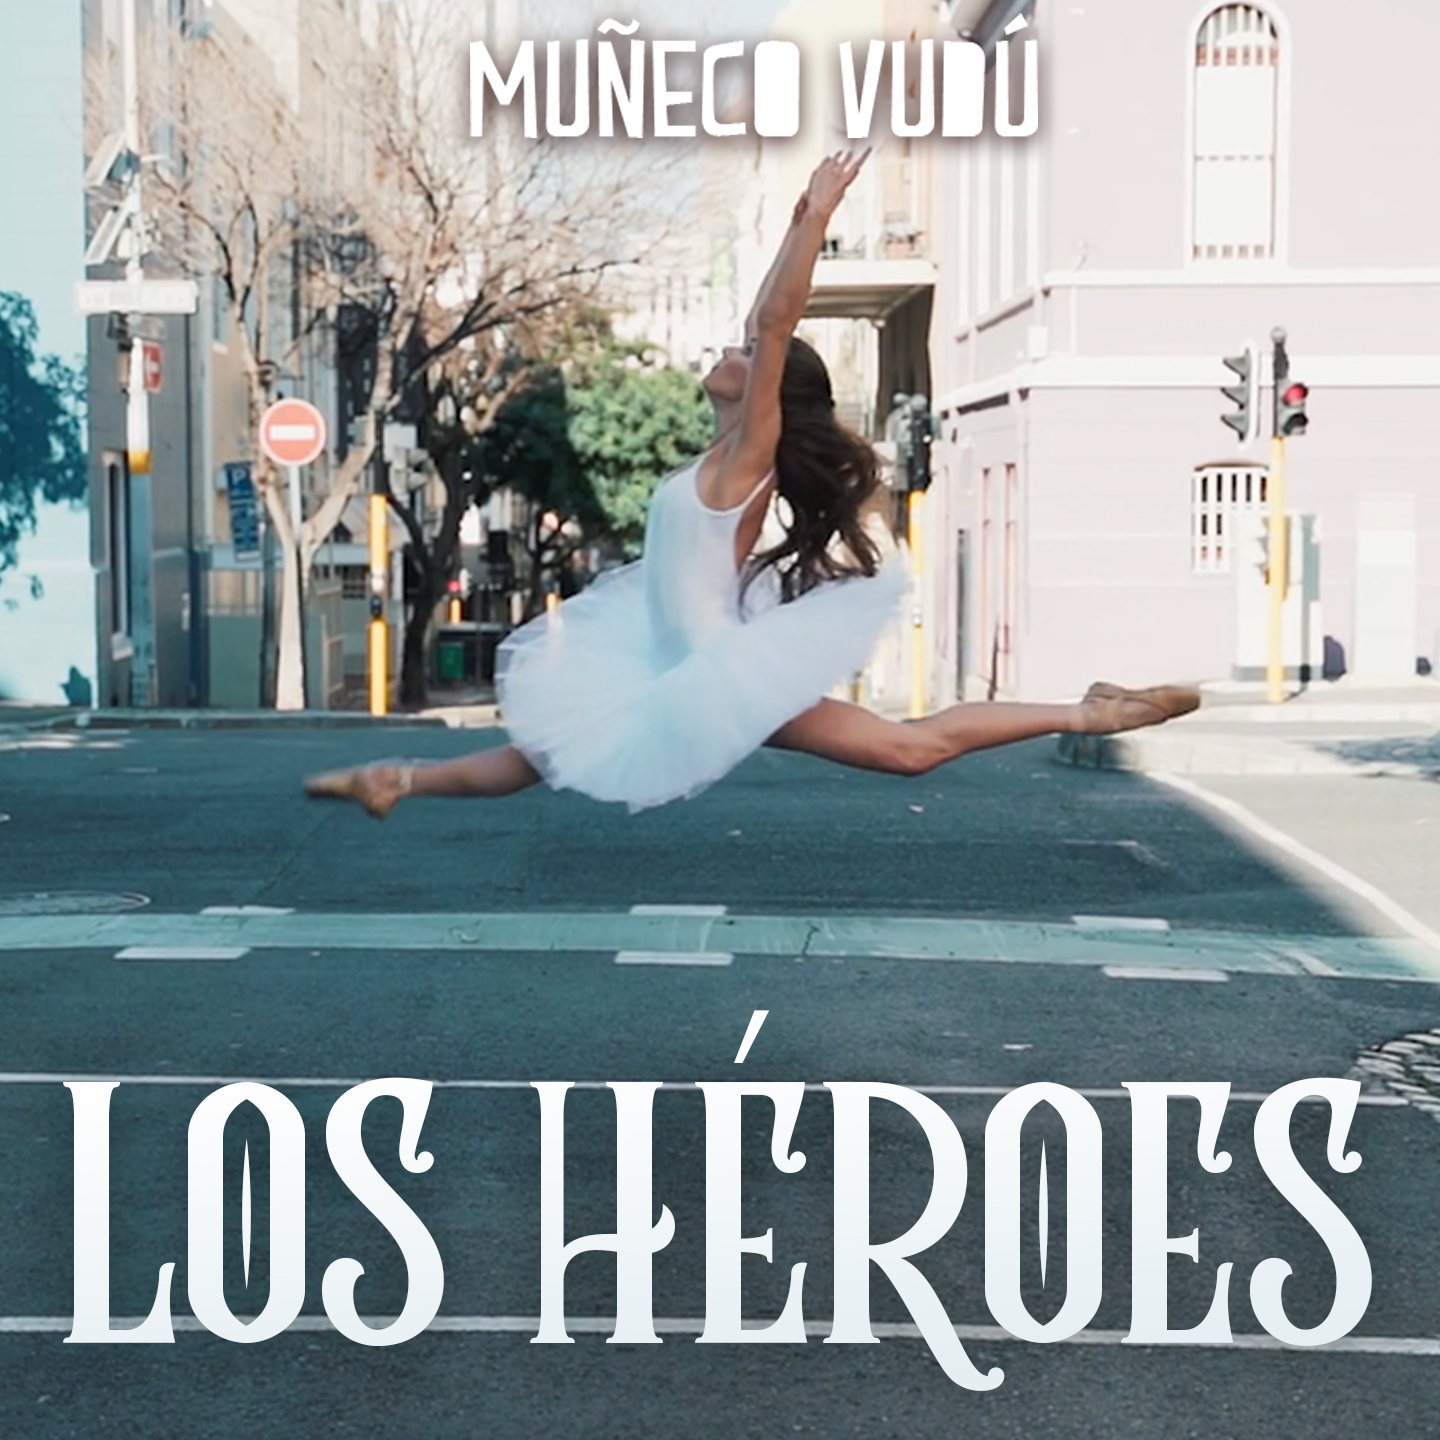 Muñeco Vudú - Los héroes (Video)